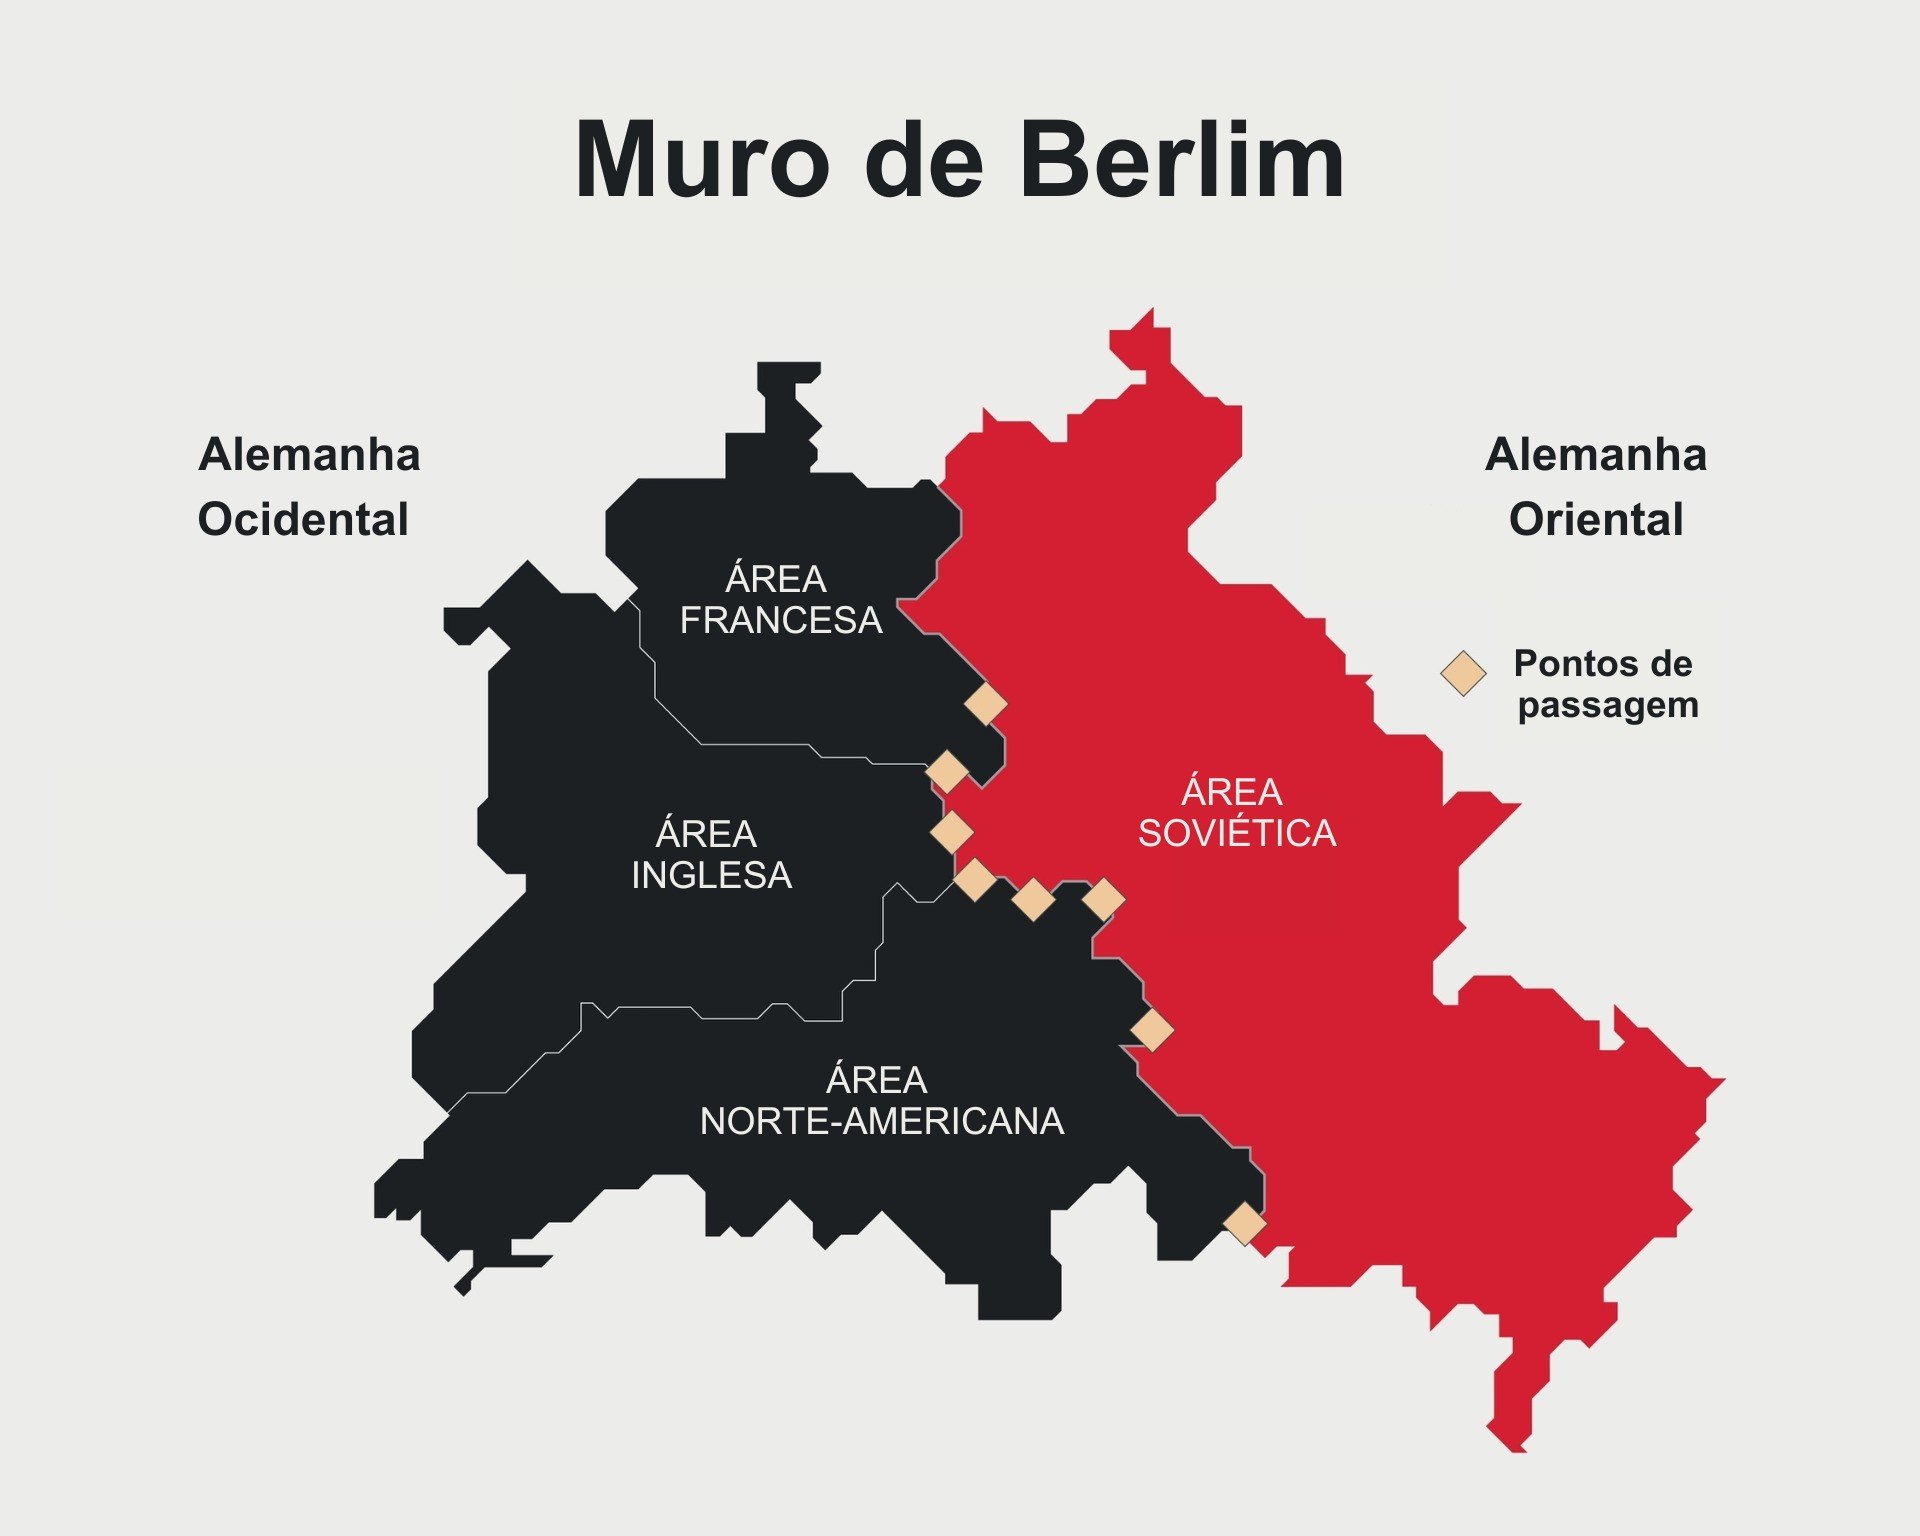 Mapa divido em preto e vermelho de Berlim, em que preto é o lado ocidental e o vermelho, oriental do Muro de Berlim.